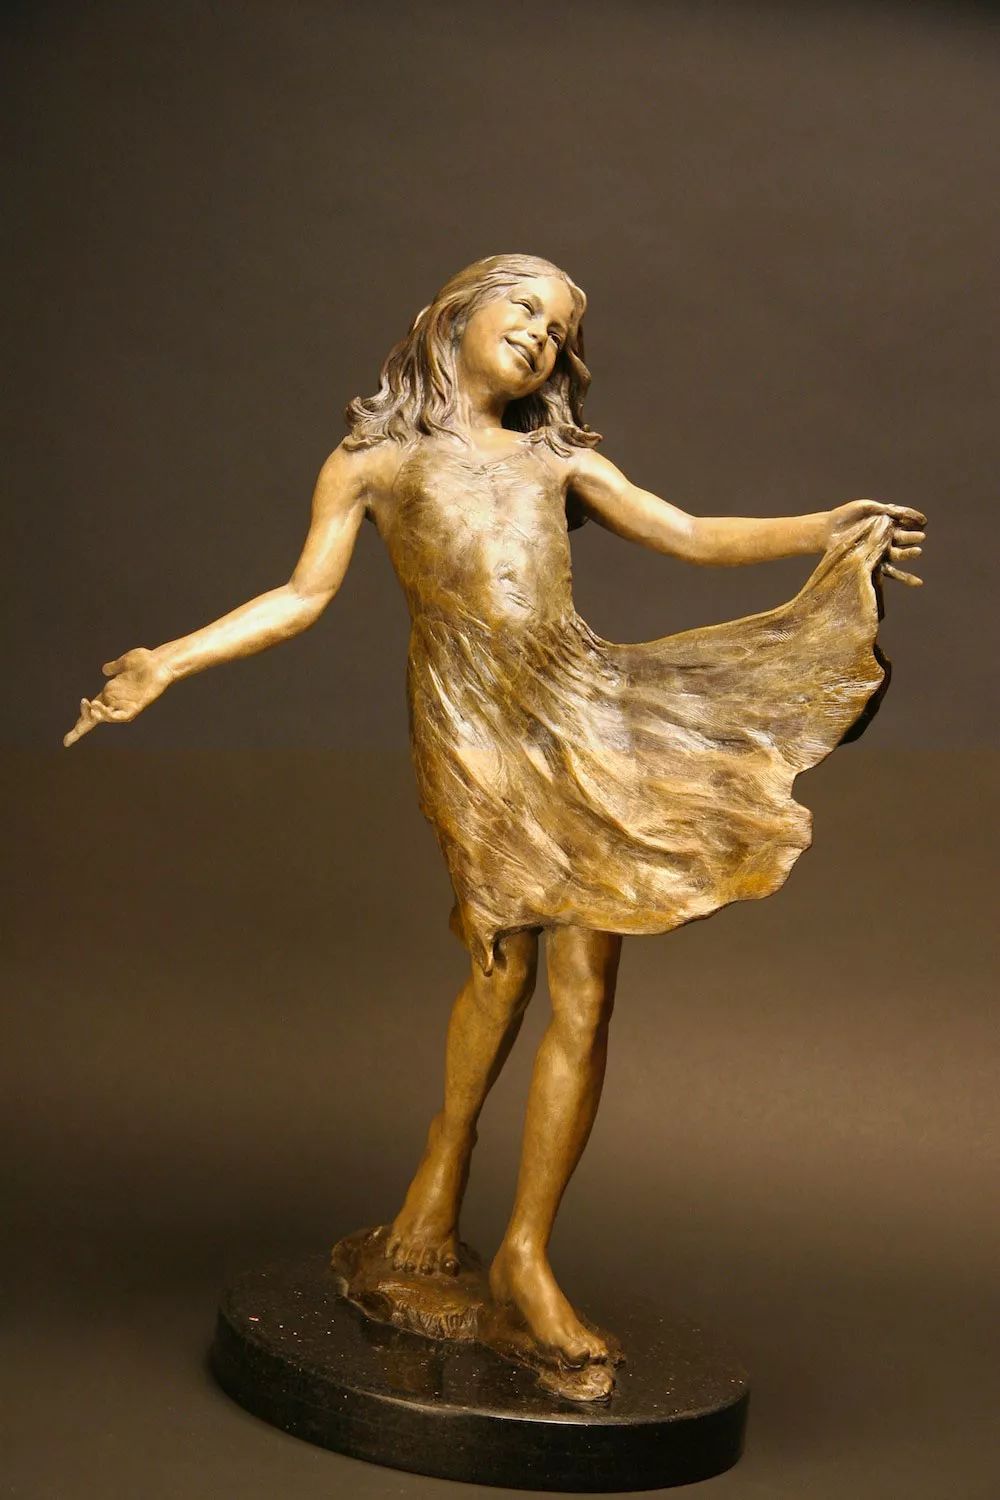 美女雕塑家angela,作品更美,人更美!